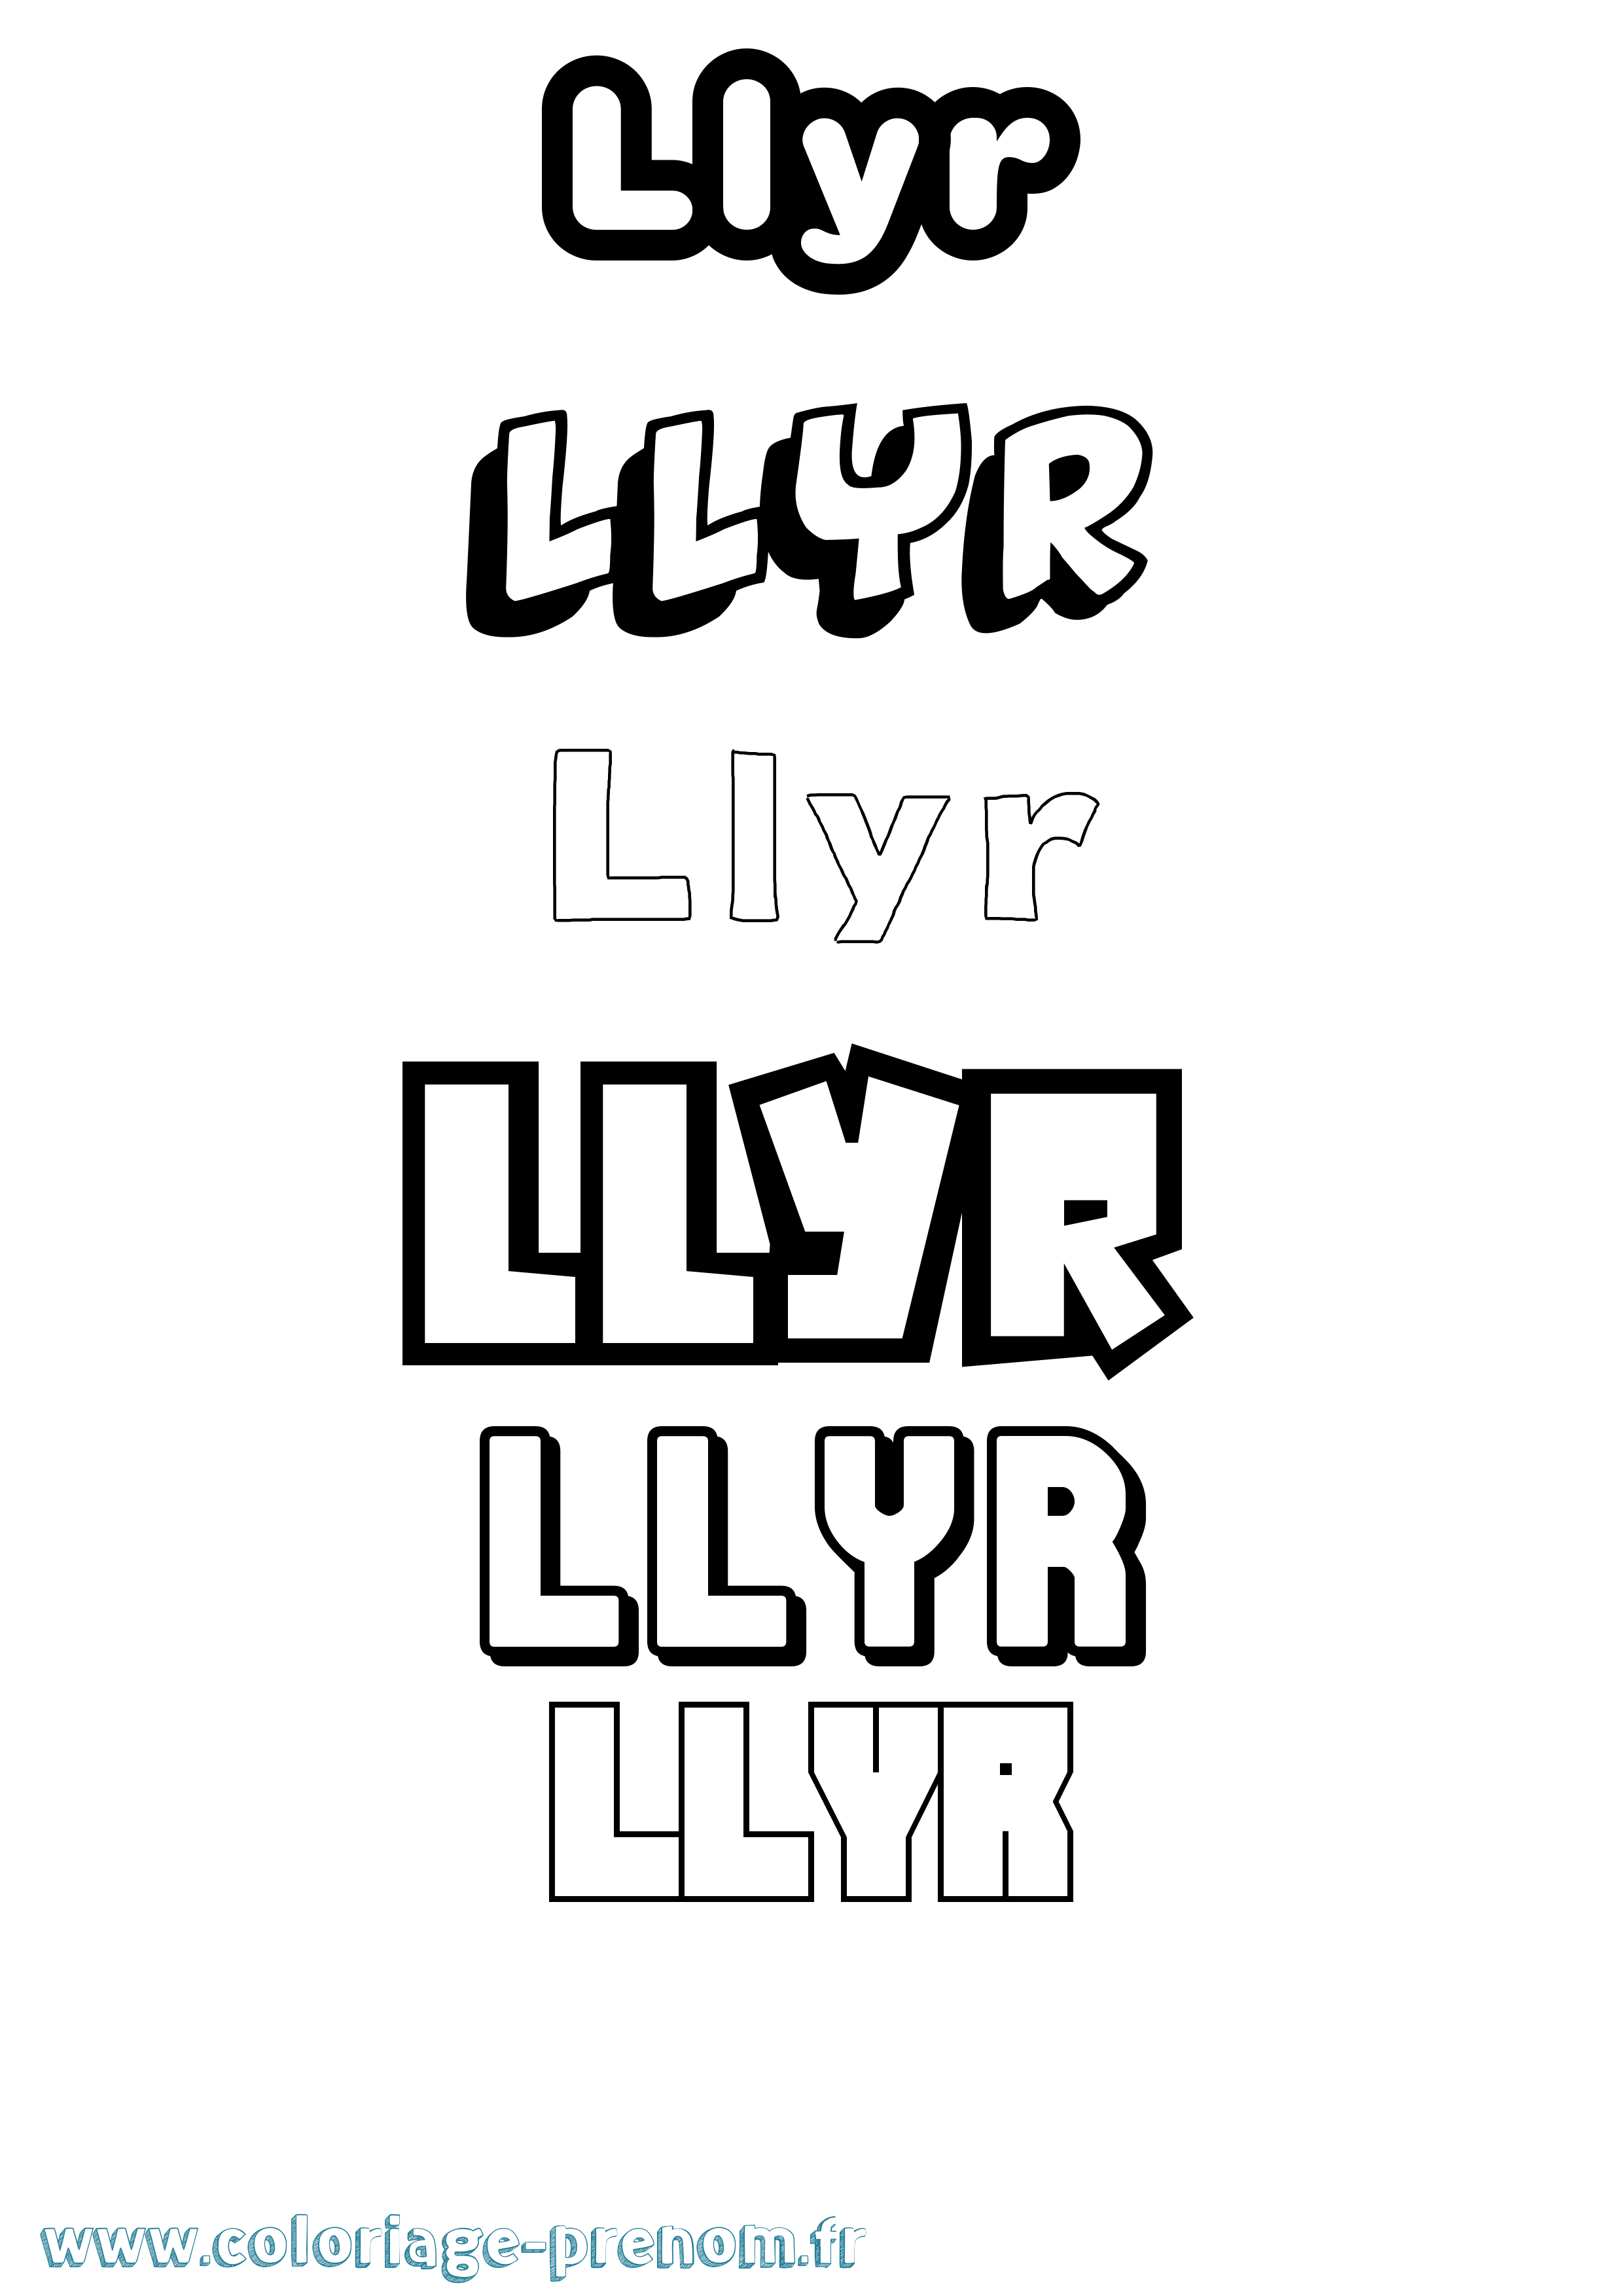 Coloriage prénom Llyr Simple